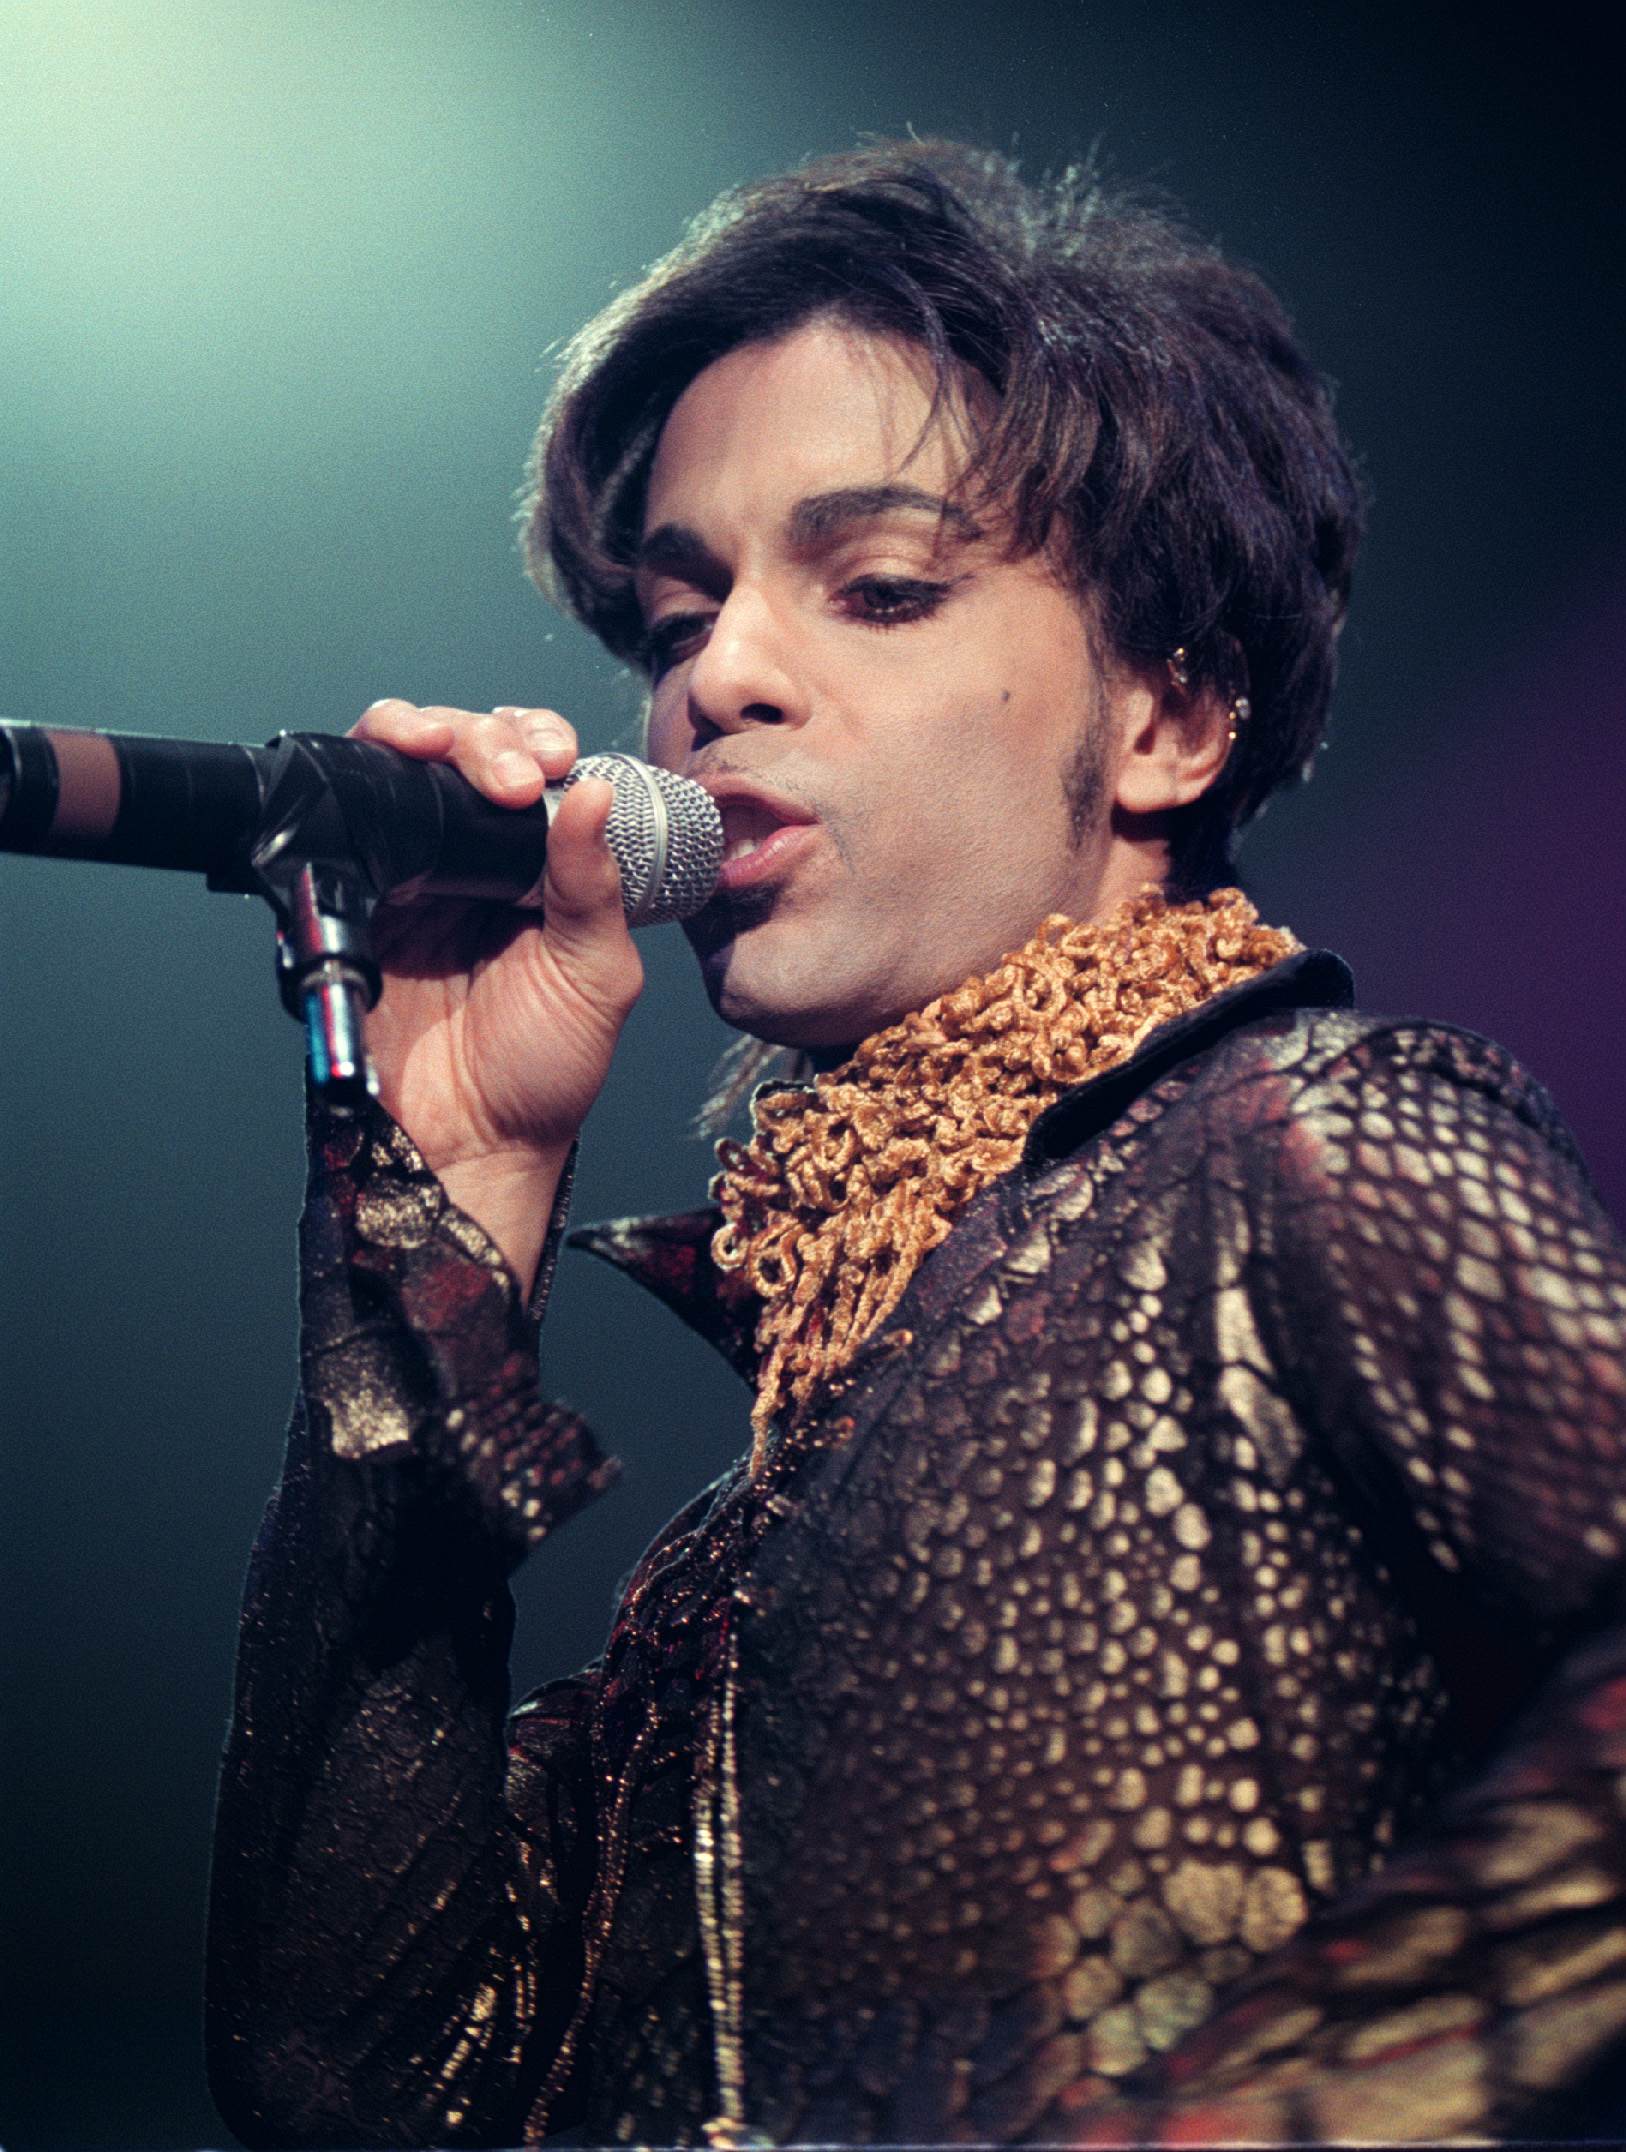 Prince var en av fjolårets största bokningar.